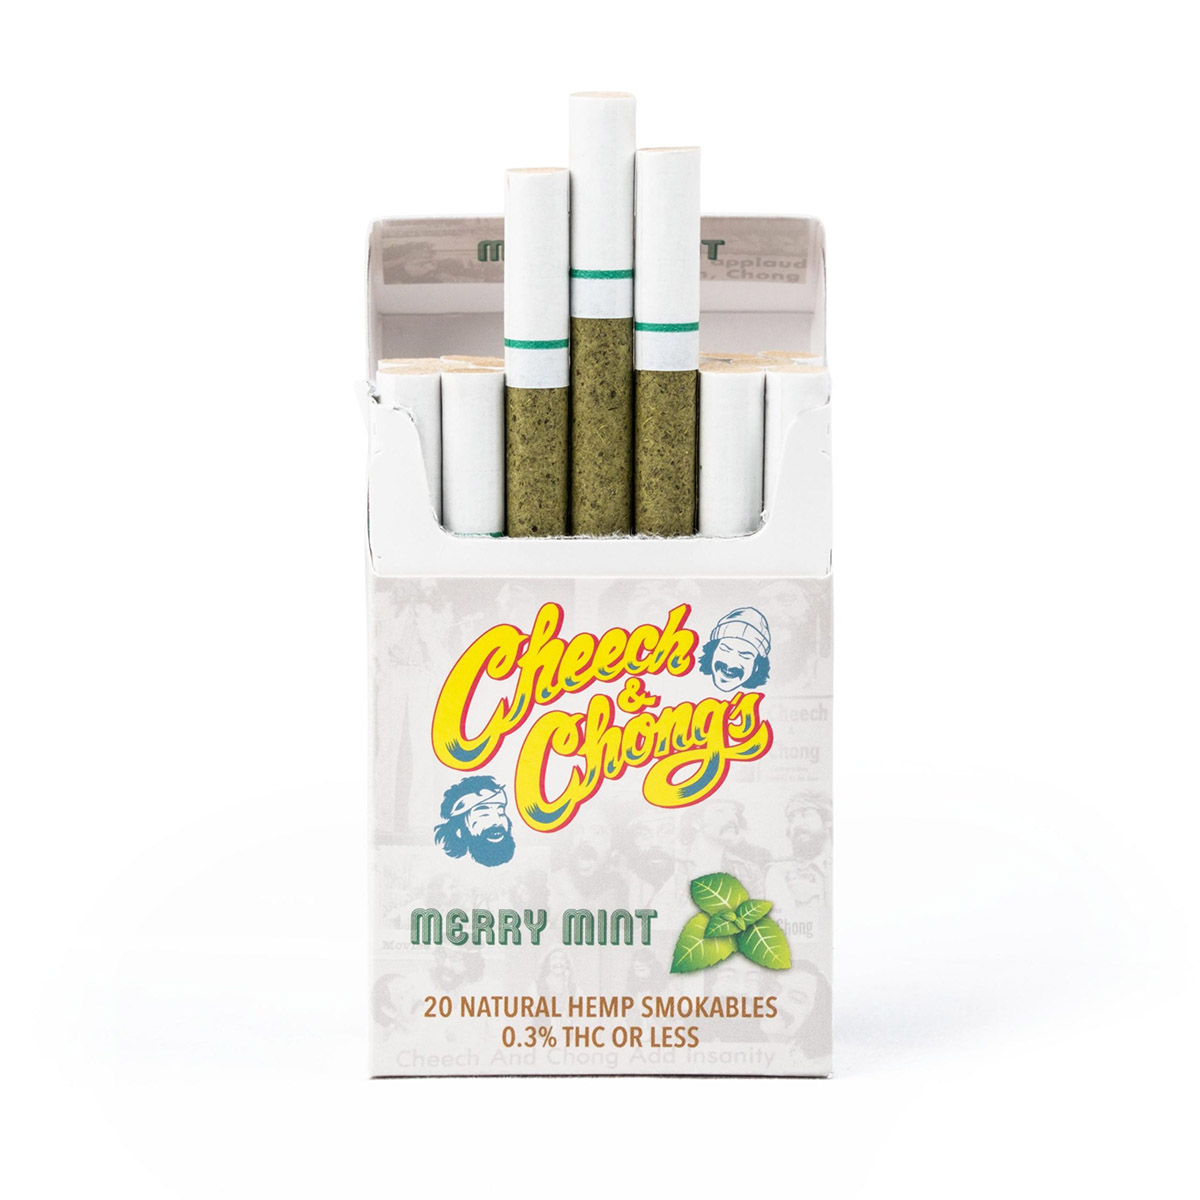 Cheech & Chong's Merry Mint Hemp Cigarettes